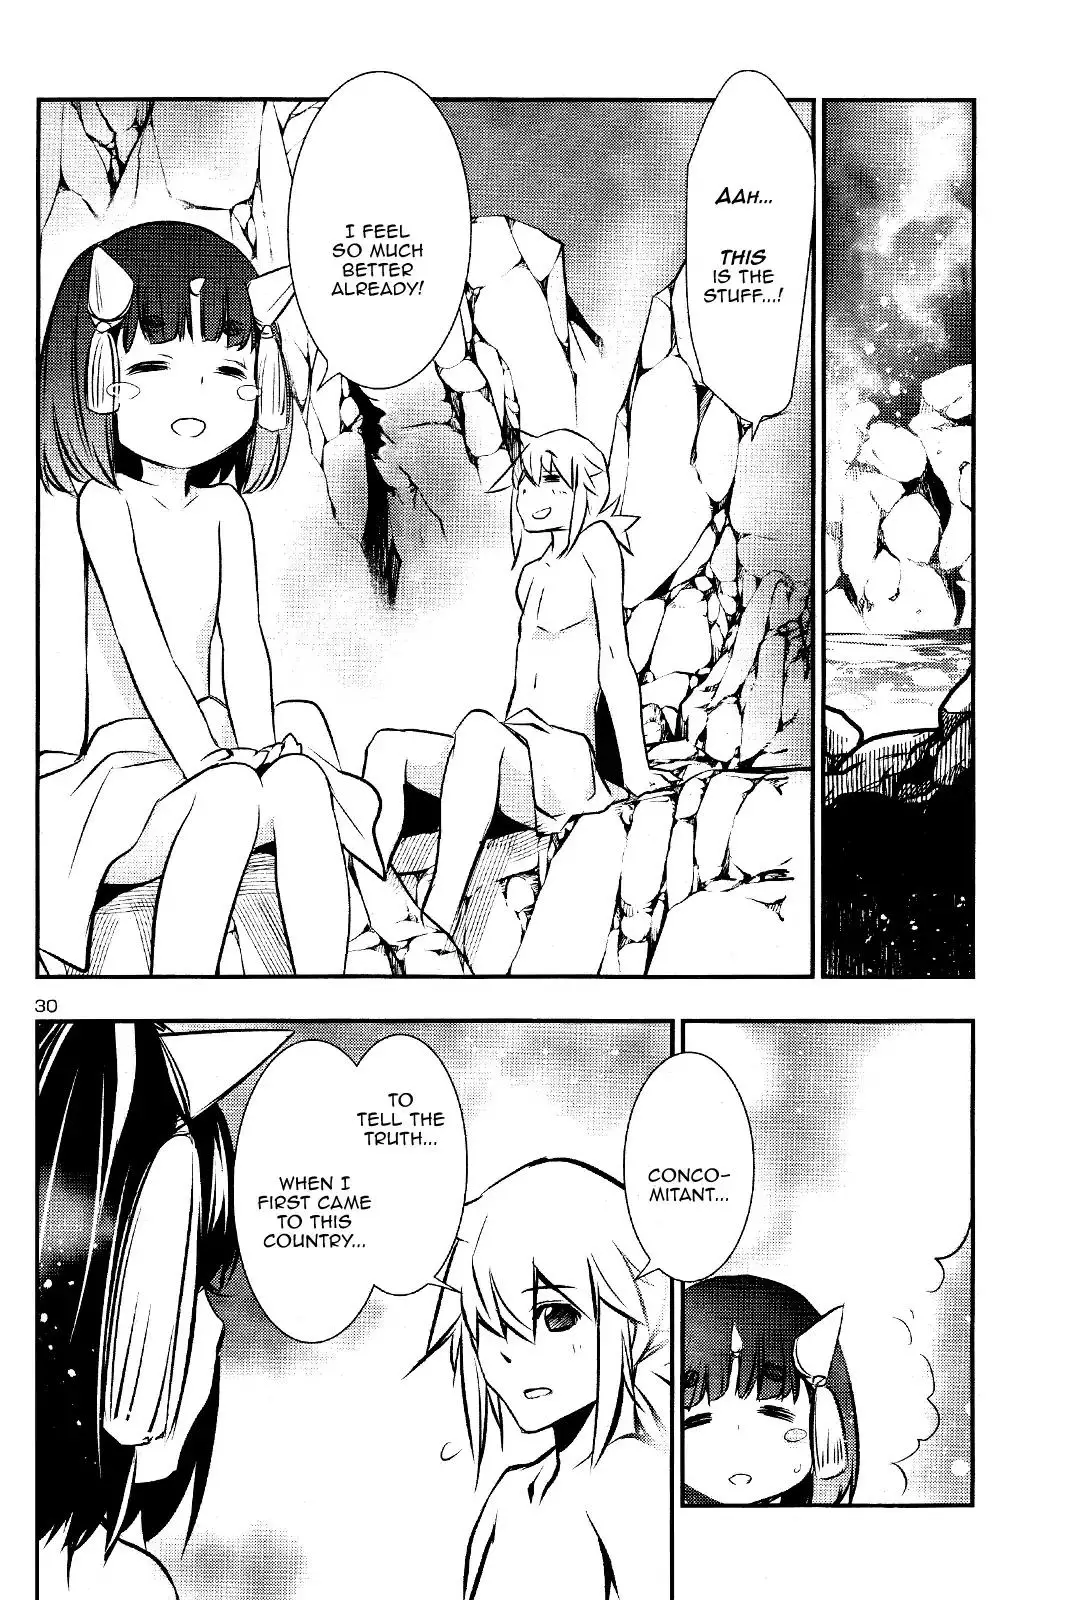 Shinju no Nectar - 29 page 30